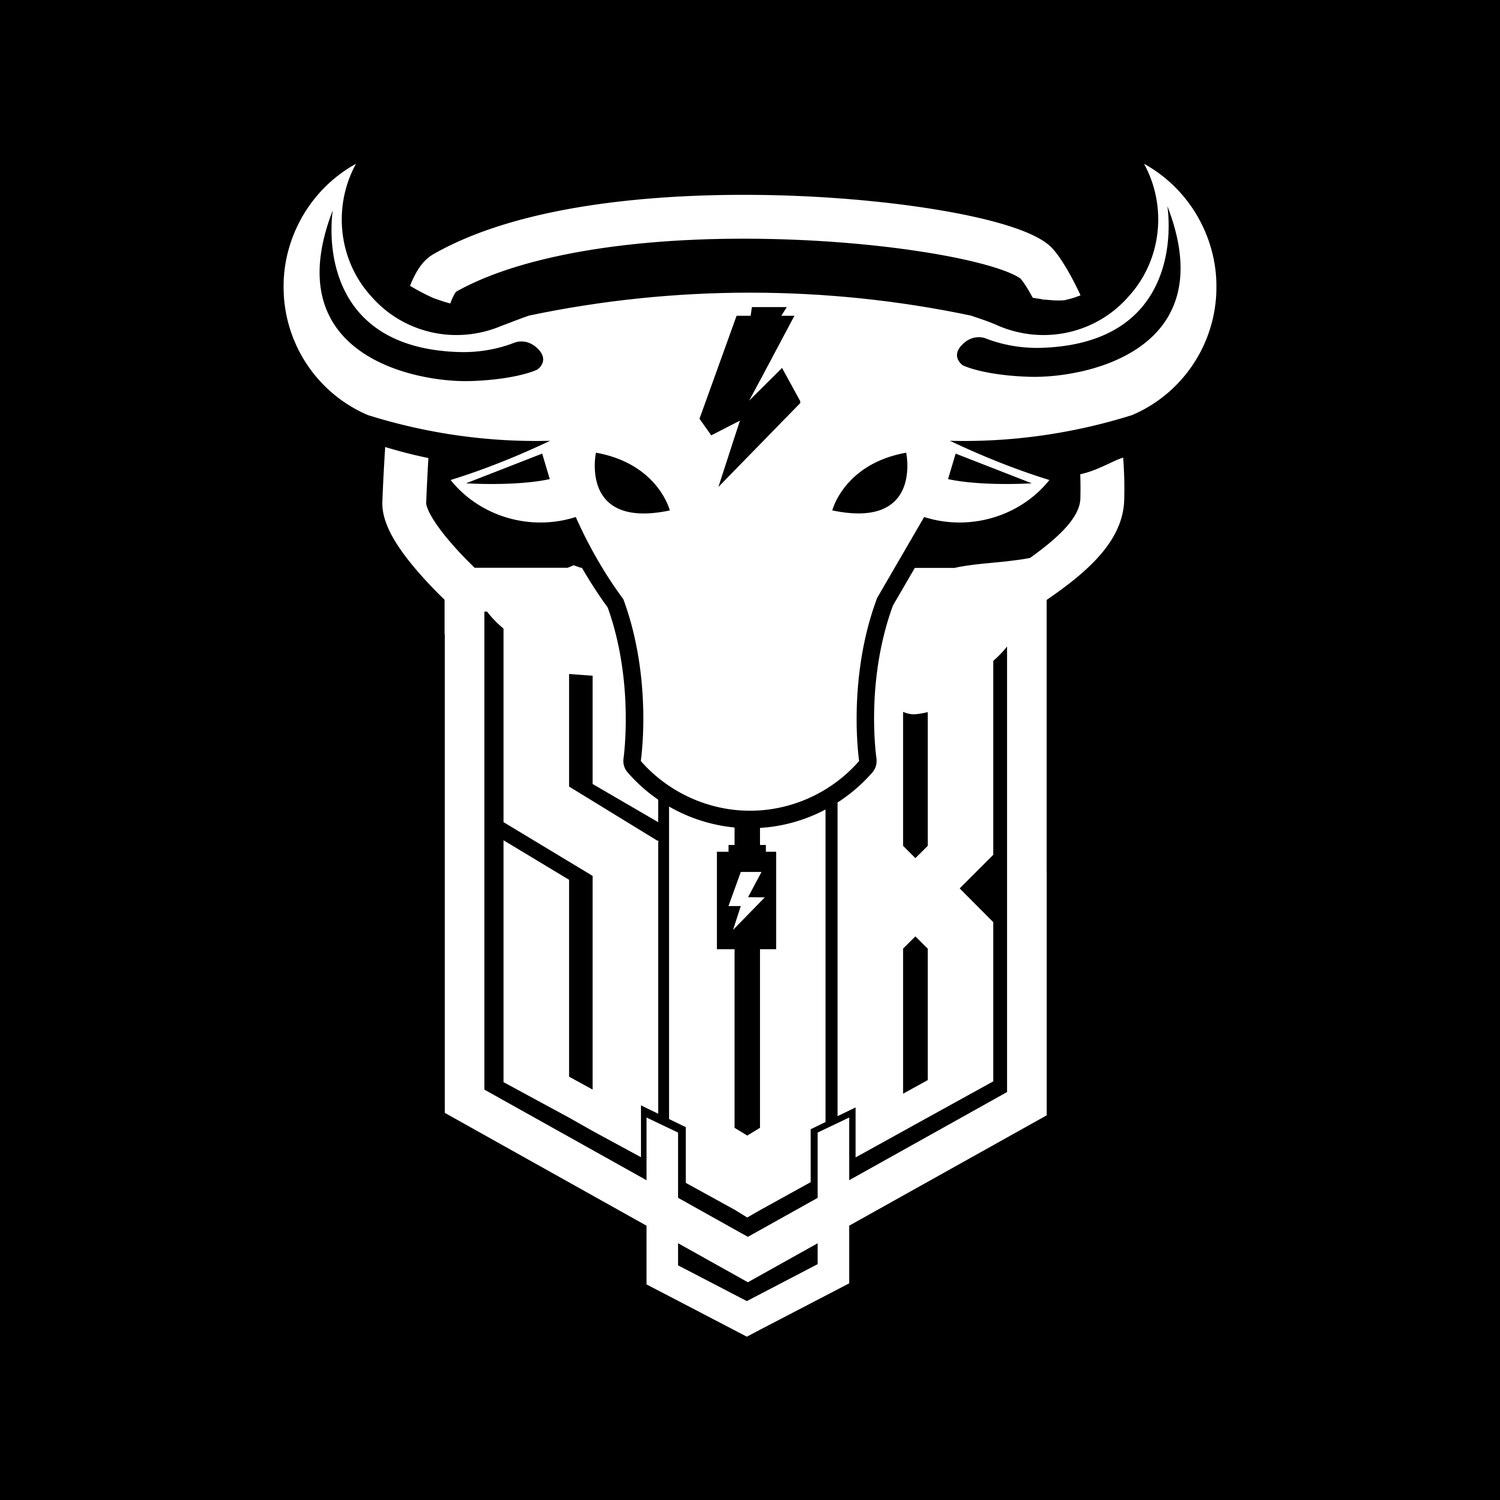 Bulle / Bulls